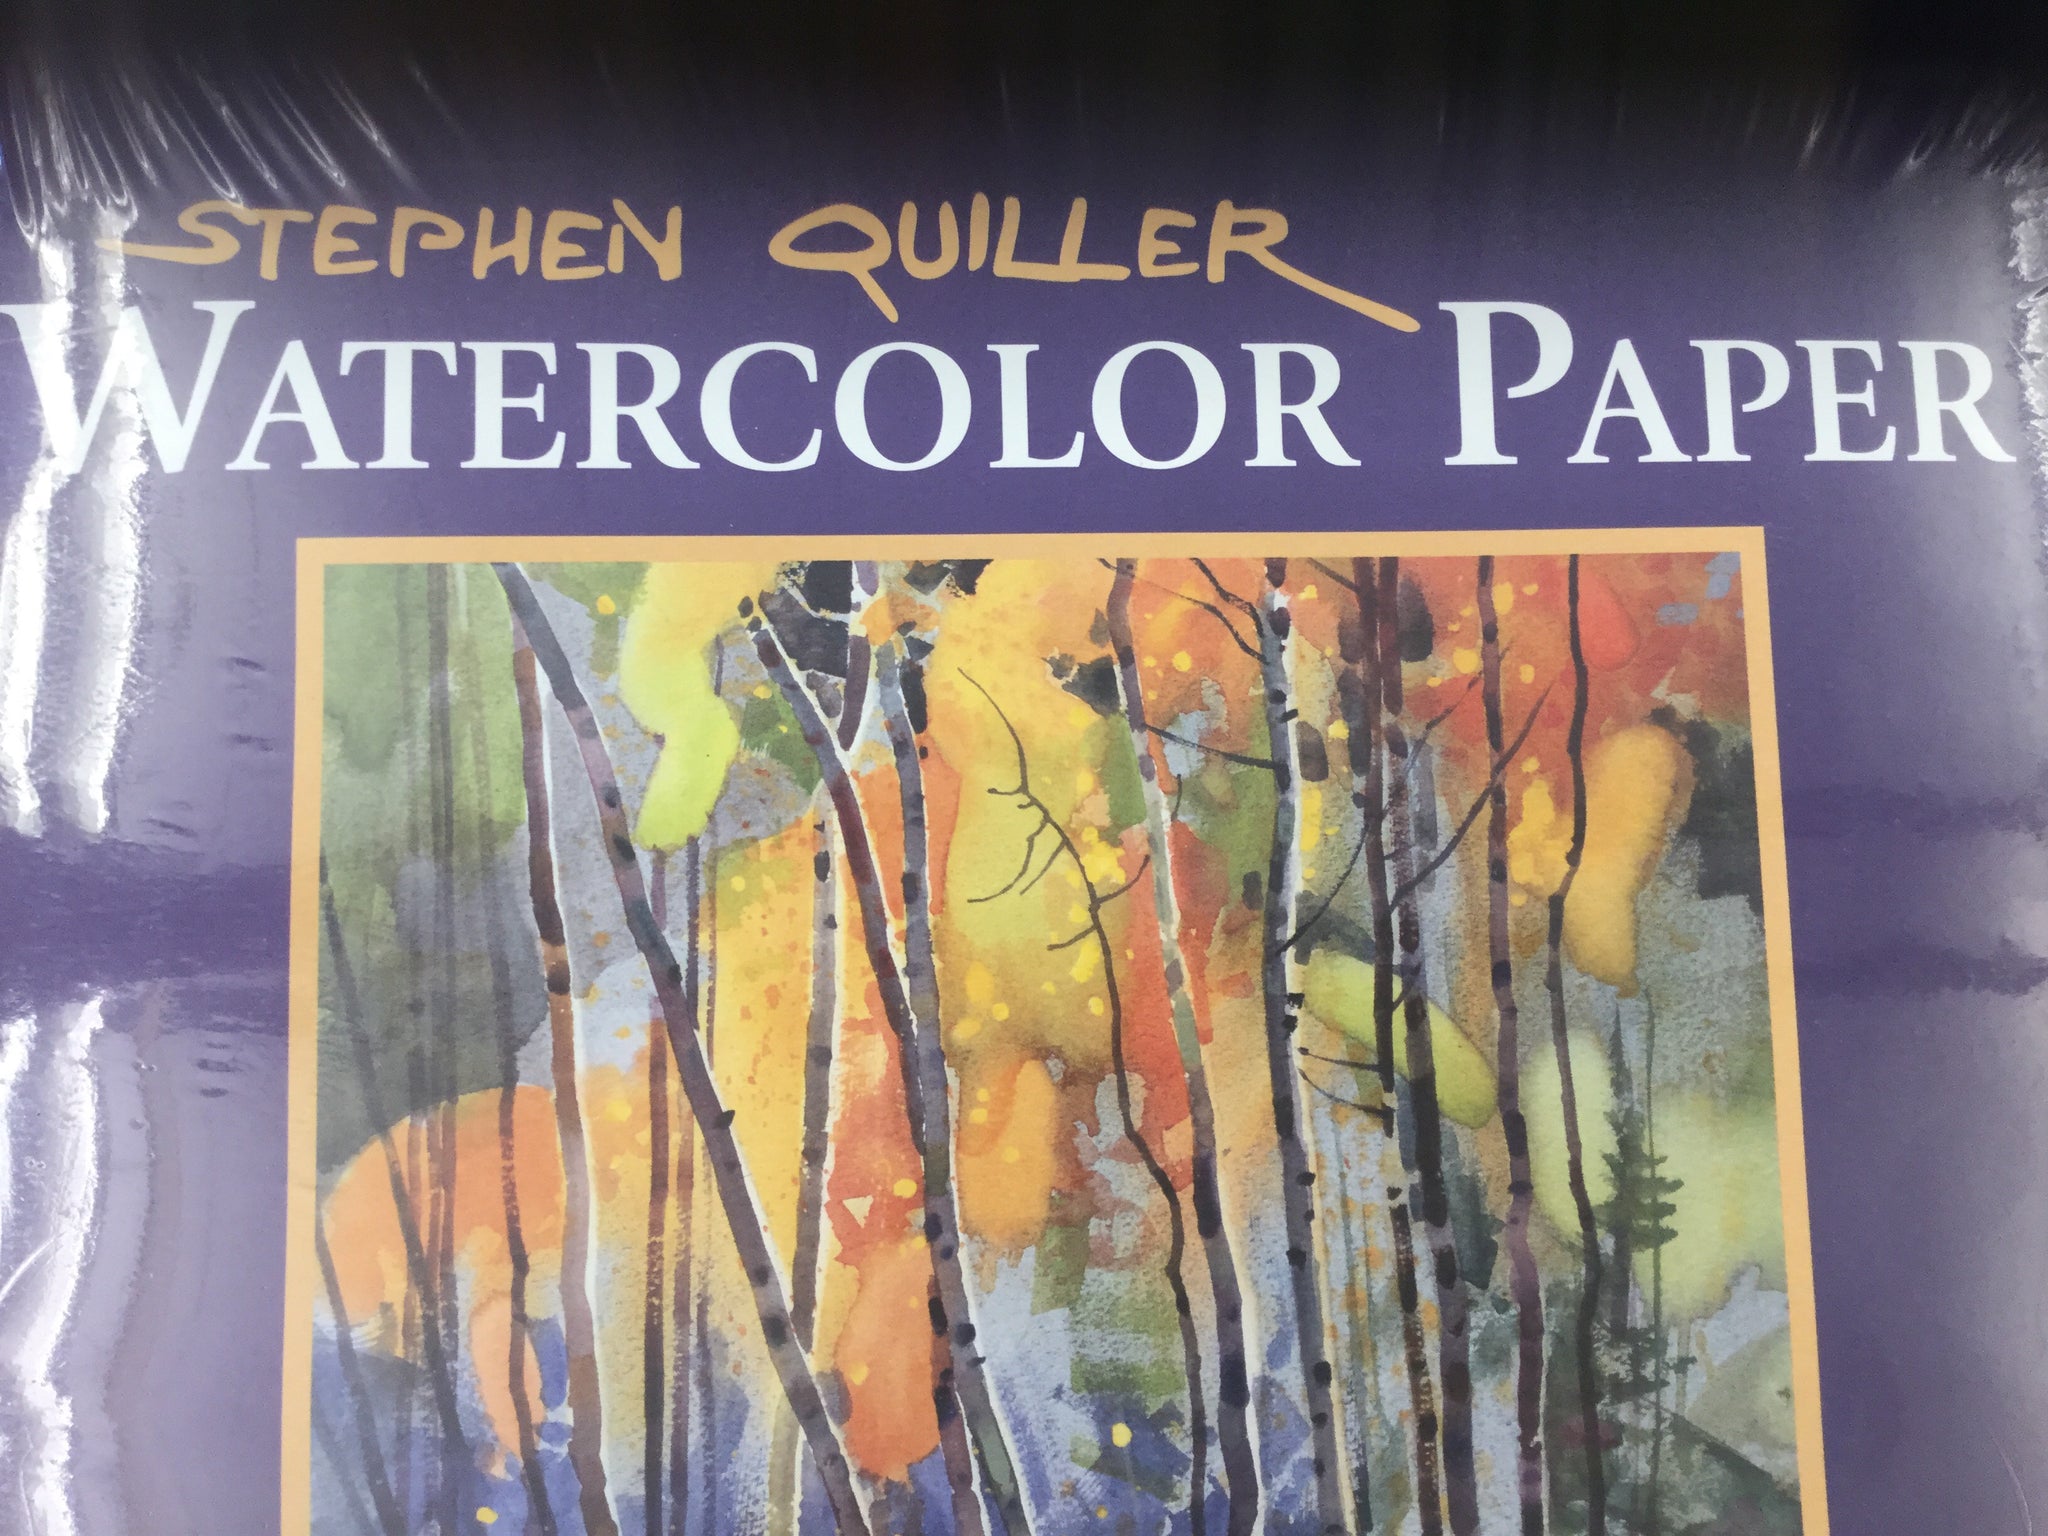 Stephen Quiller - Watercolor Paper 15”x22”